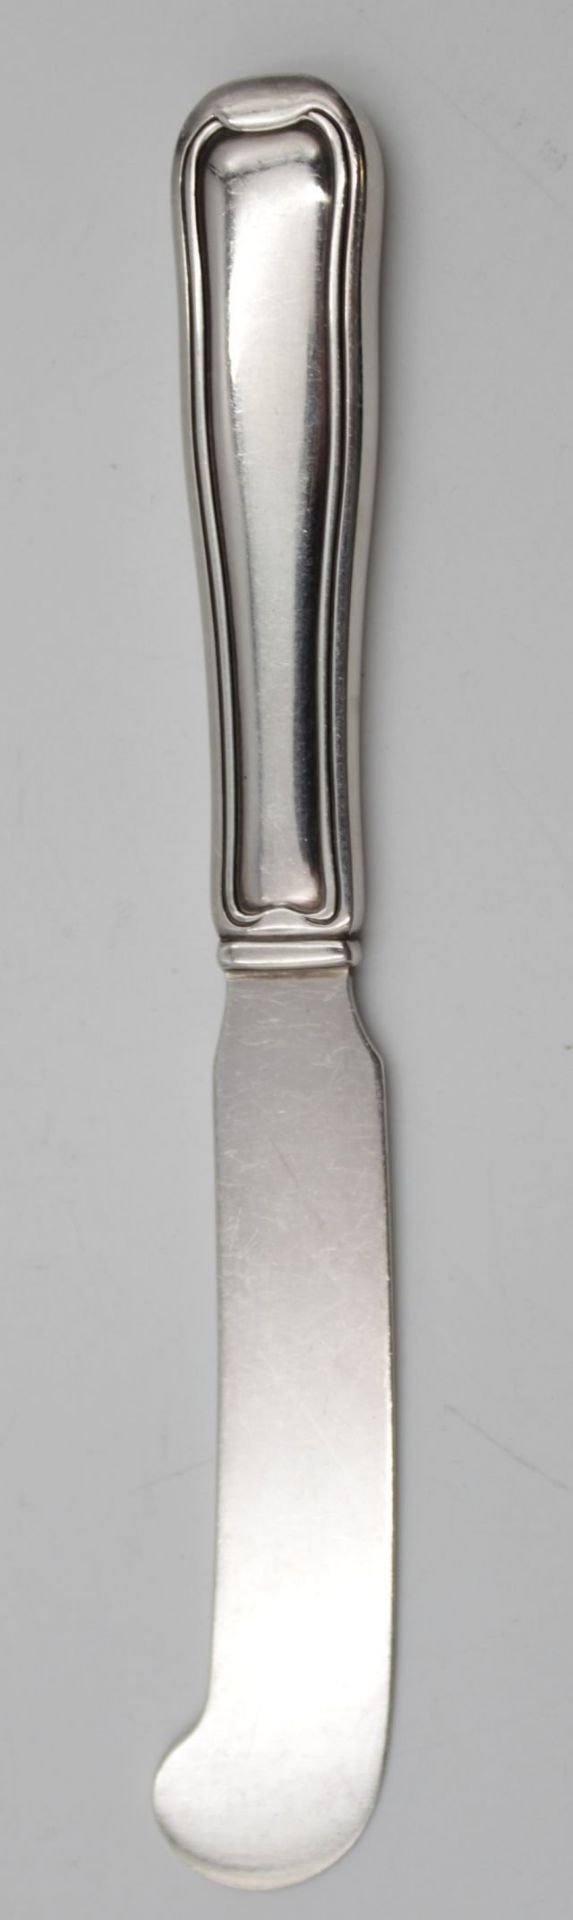 Ein Buttermesser Georg Jensen Fadenmuster , Silber 925 Gewicht 34 gr L-15cm .